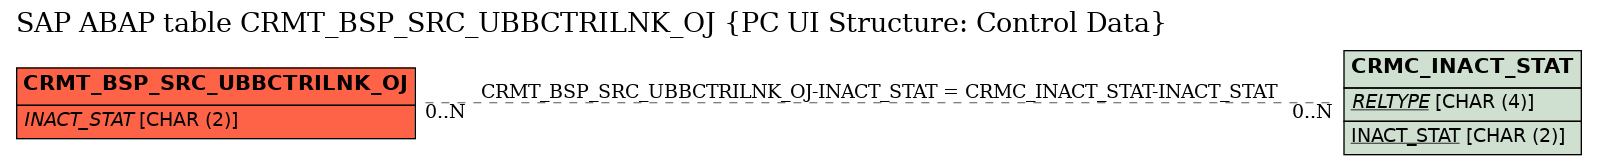 E-R Diagram for table CRMT_BSP_SRC_UBBCTRILNK_OJ (PC UI Structure: Control Data)